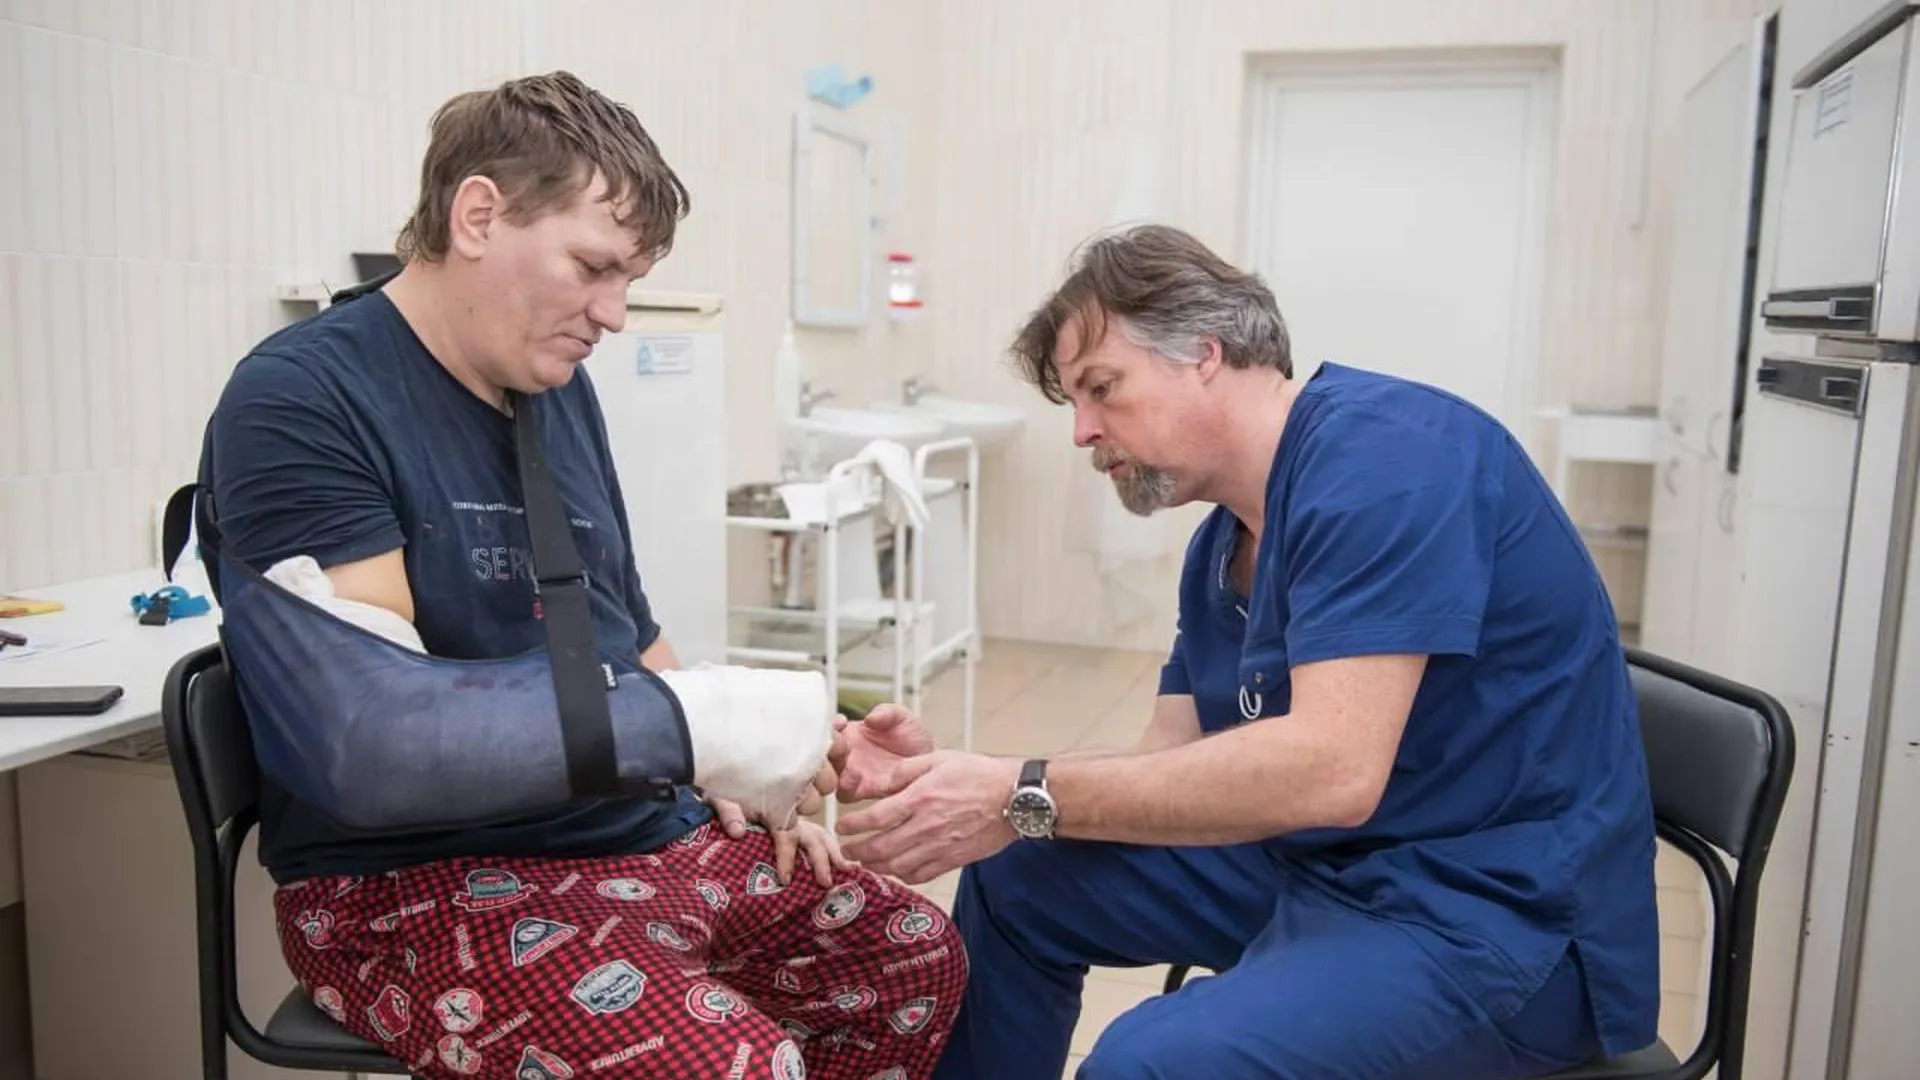 Вспылил во время спора: пациента с перерезанной осколком стекла рукой спасли в Ногинске